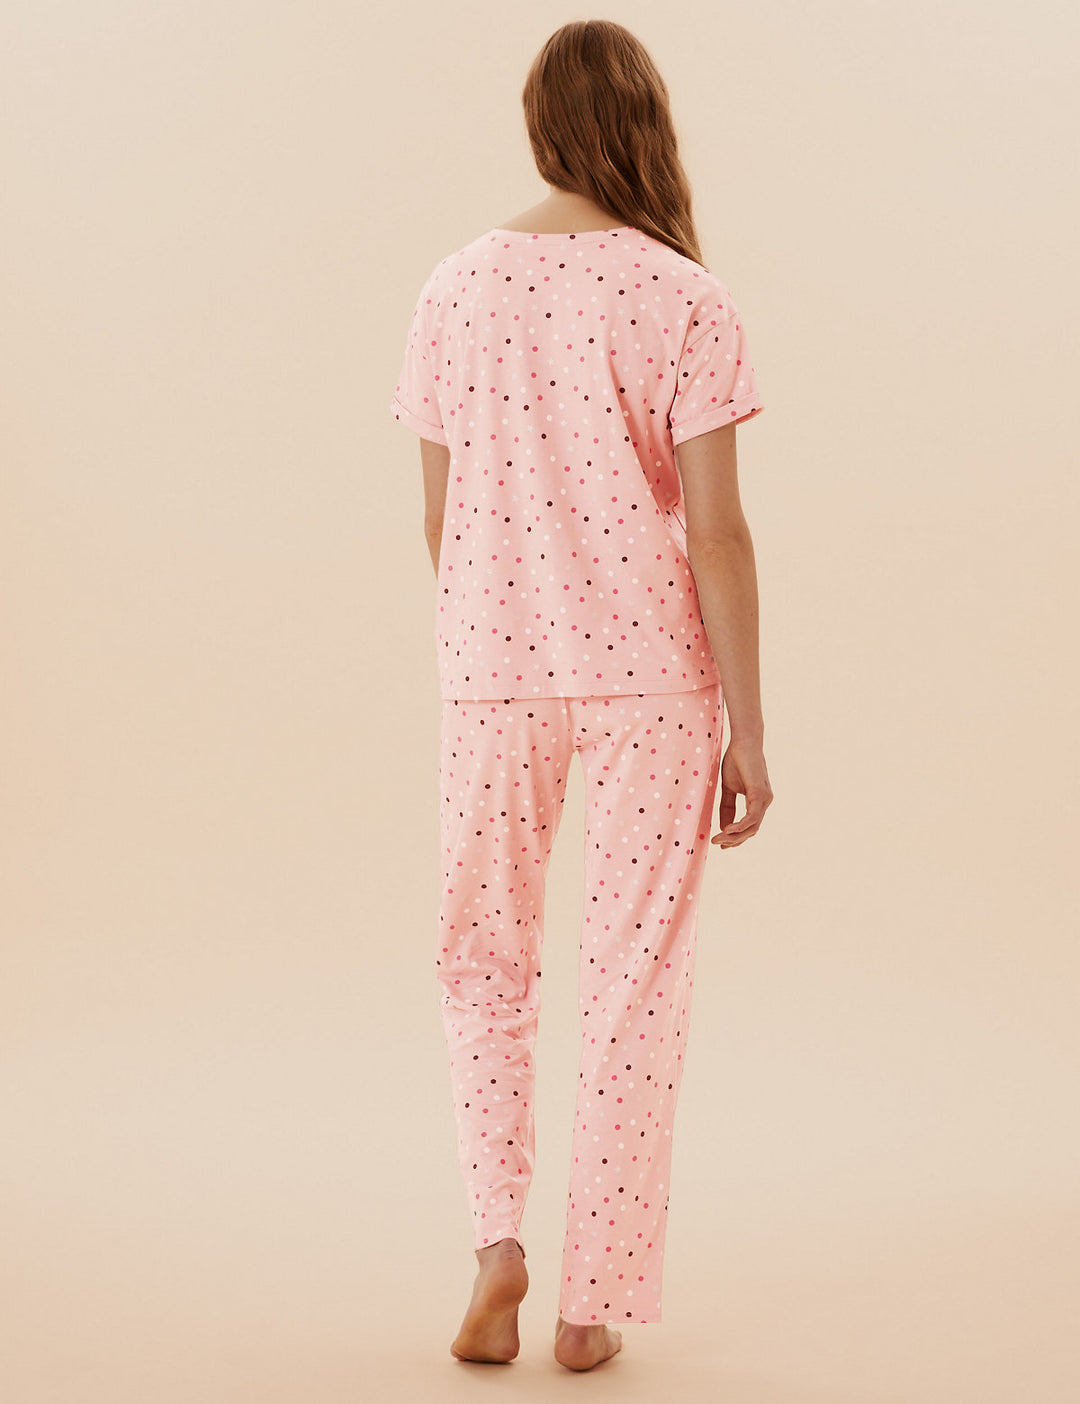 M&S Ladies Pajama Suit T37/4458F